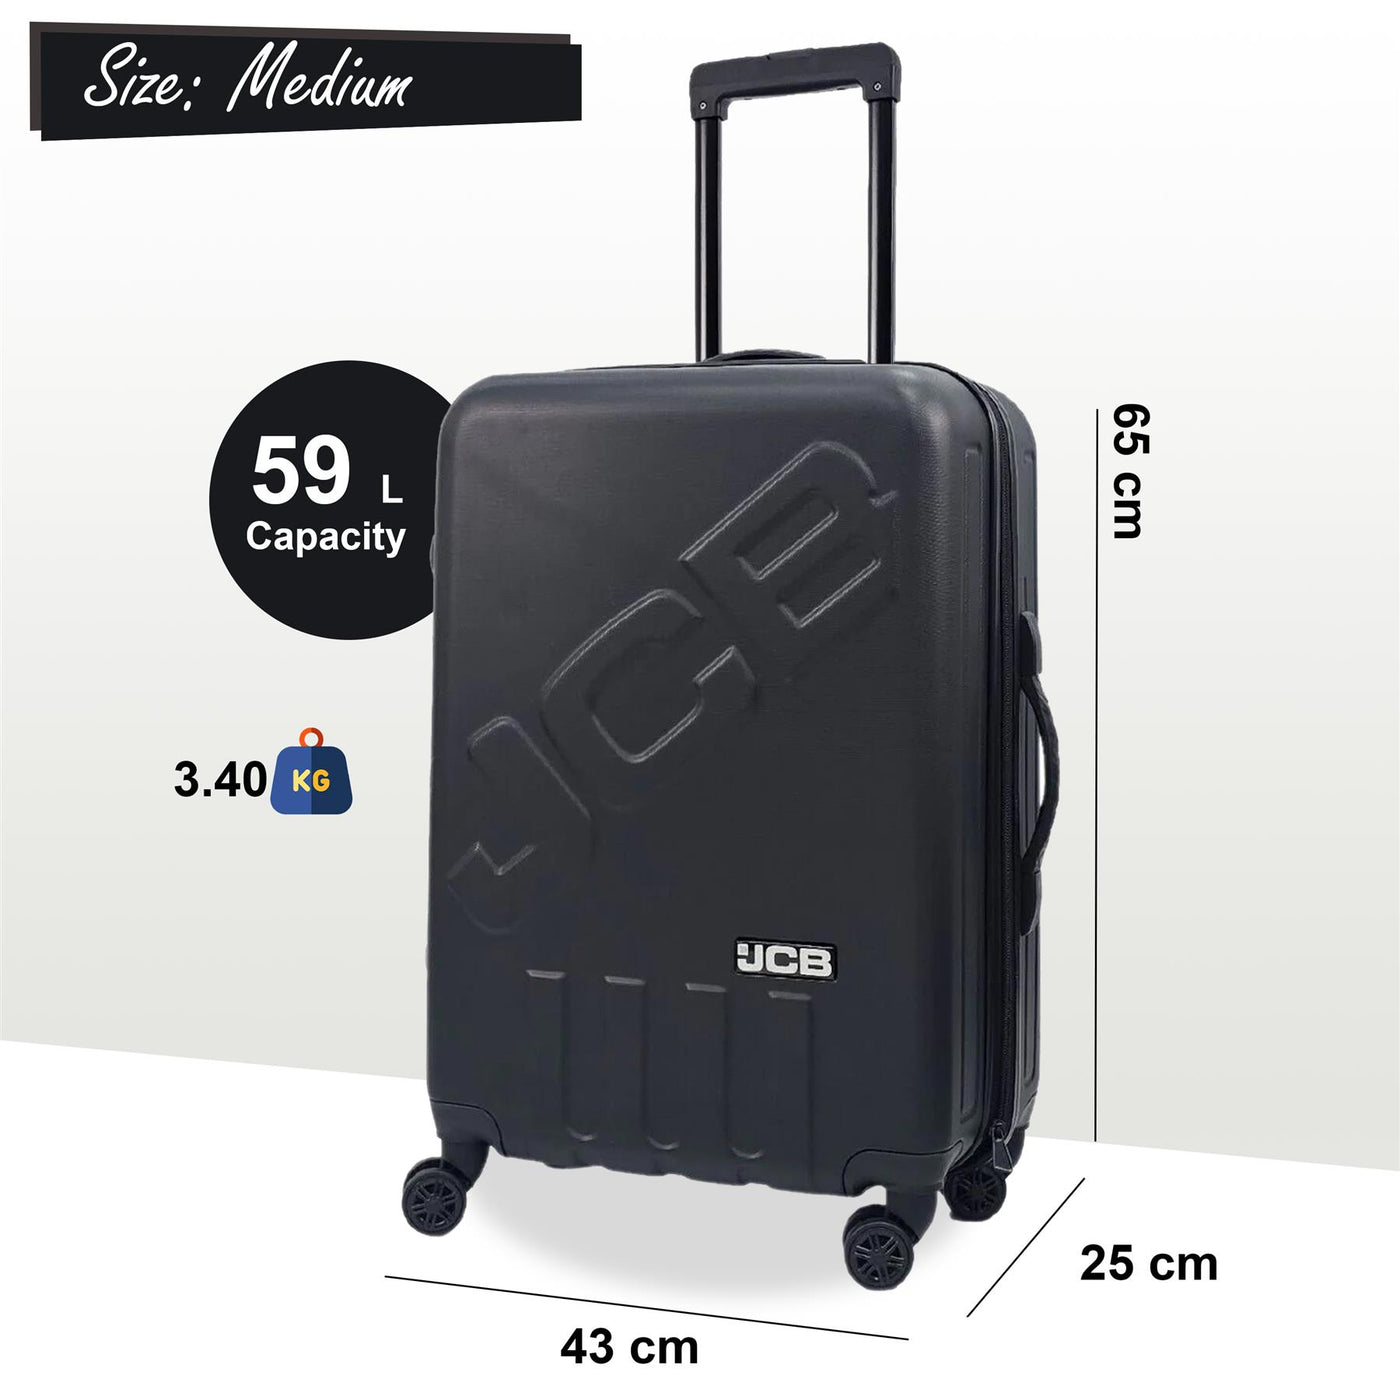 Black Hard Shell Suitcase Set Luggage Travel Bag